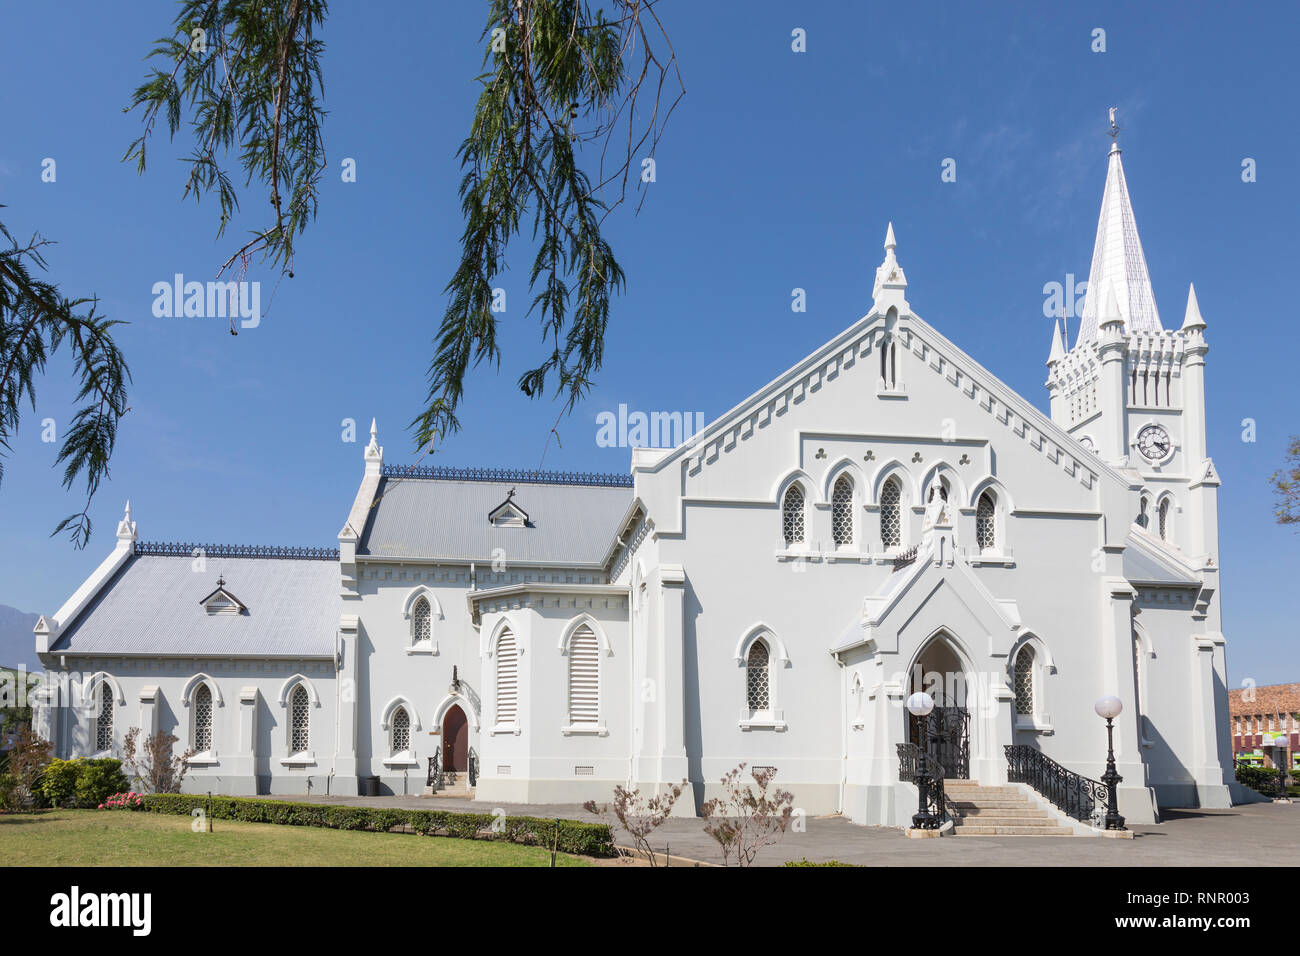 Robertson Moedergemeente ou église ou Église Réformée hollandaise, Robertson, Breede River Valley, Western Cape, Afrique du Sud Banque D'Images